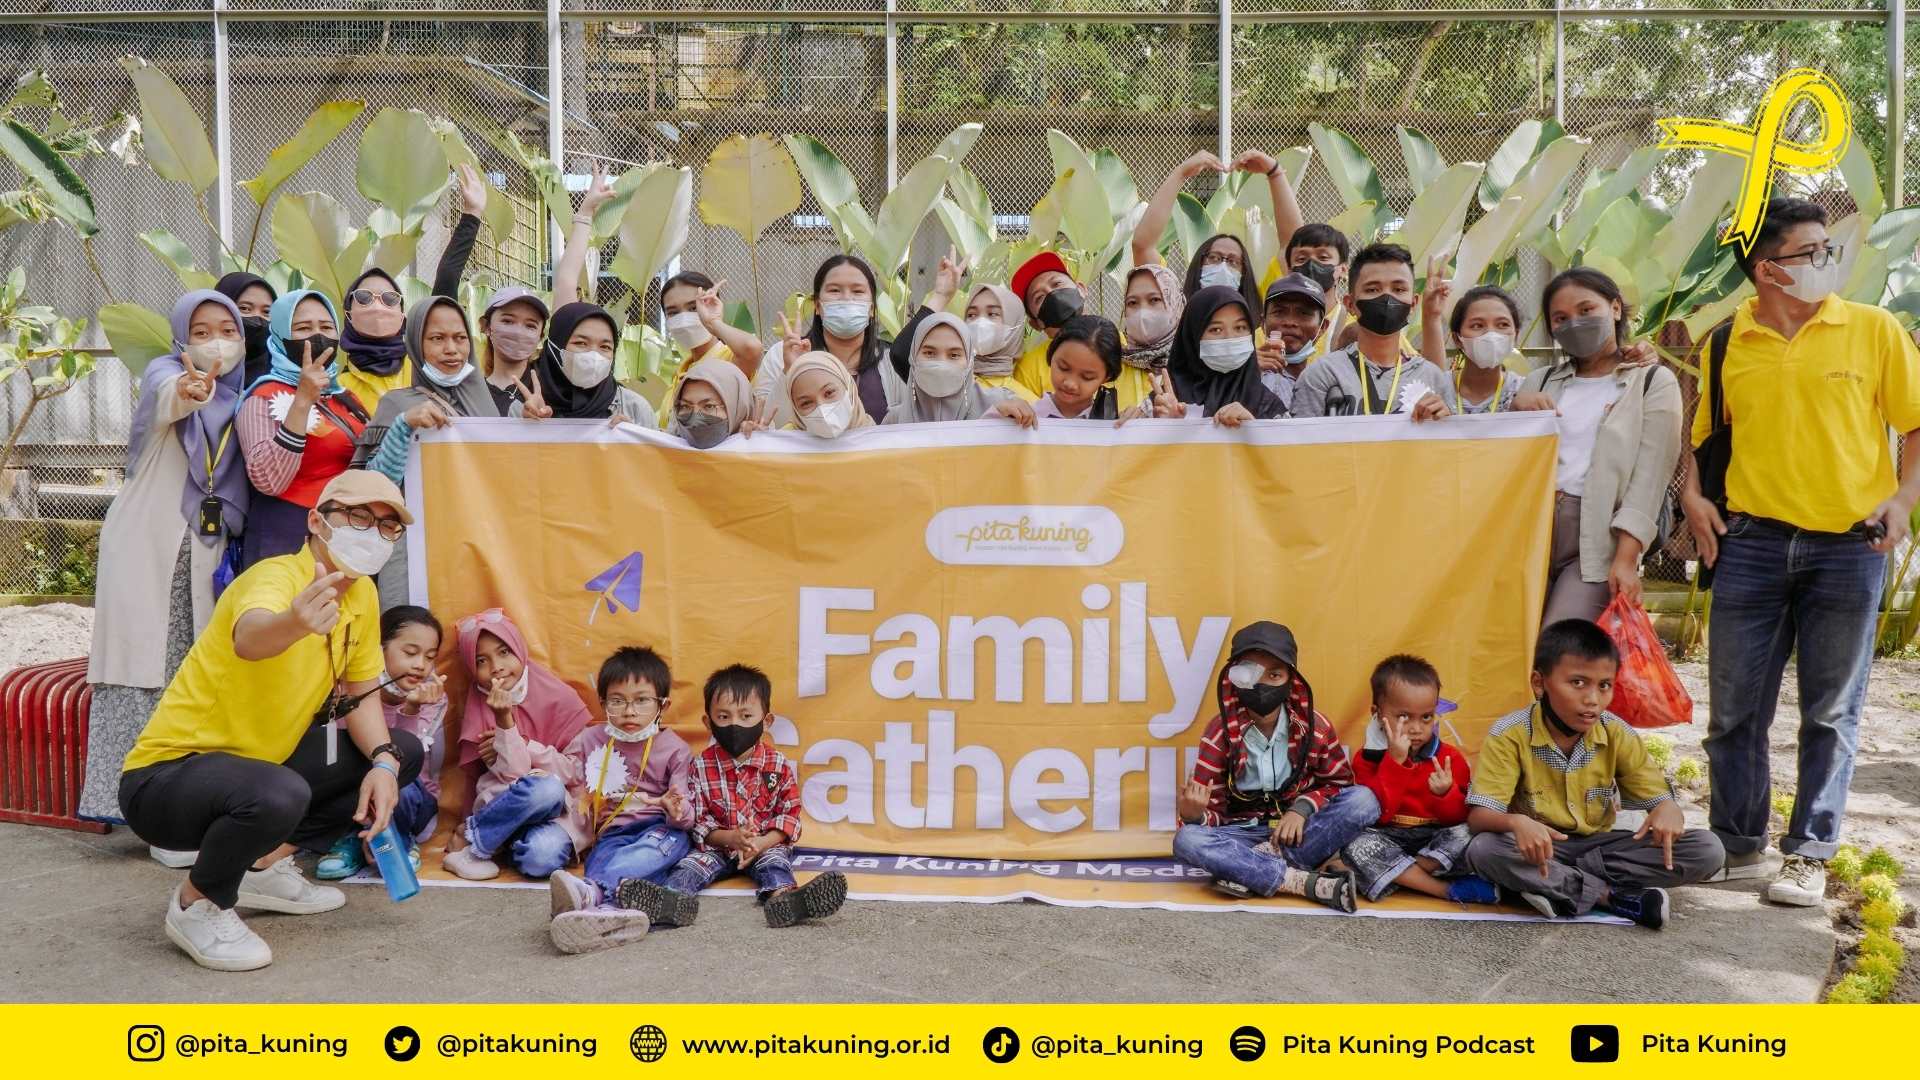 Family Gathering Pita Kuning Medan (2)